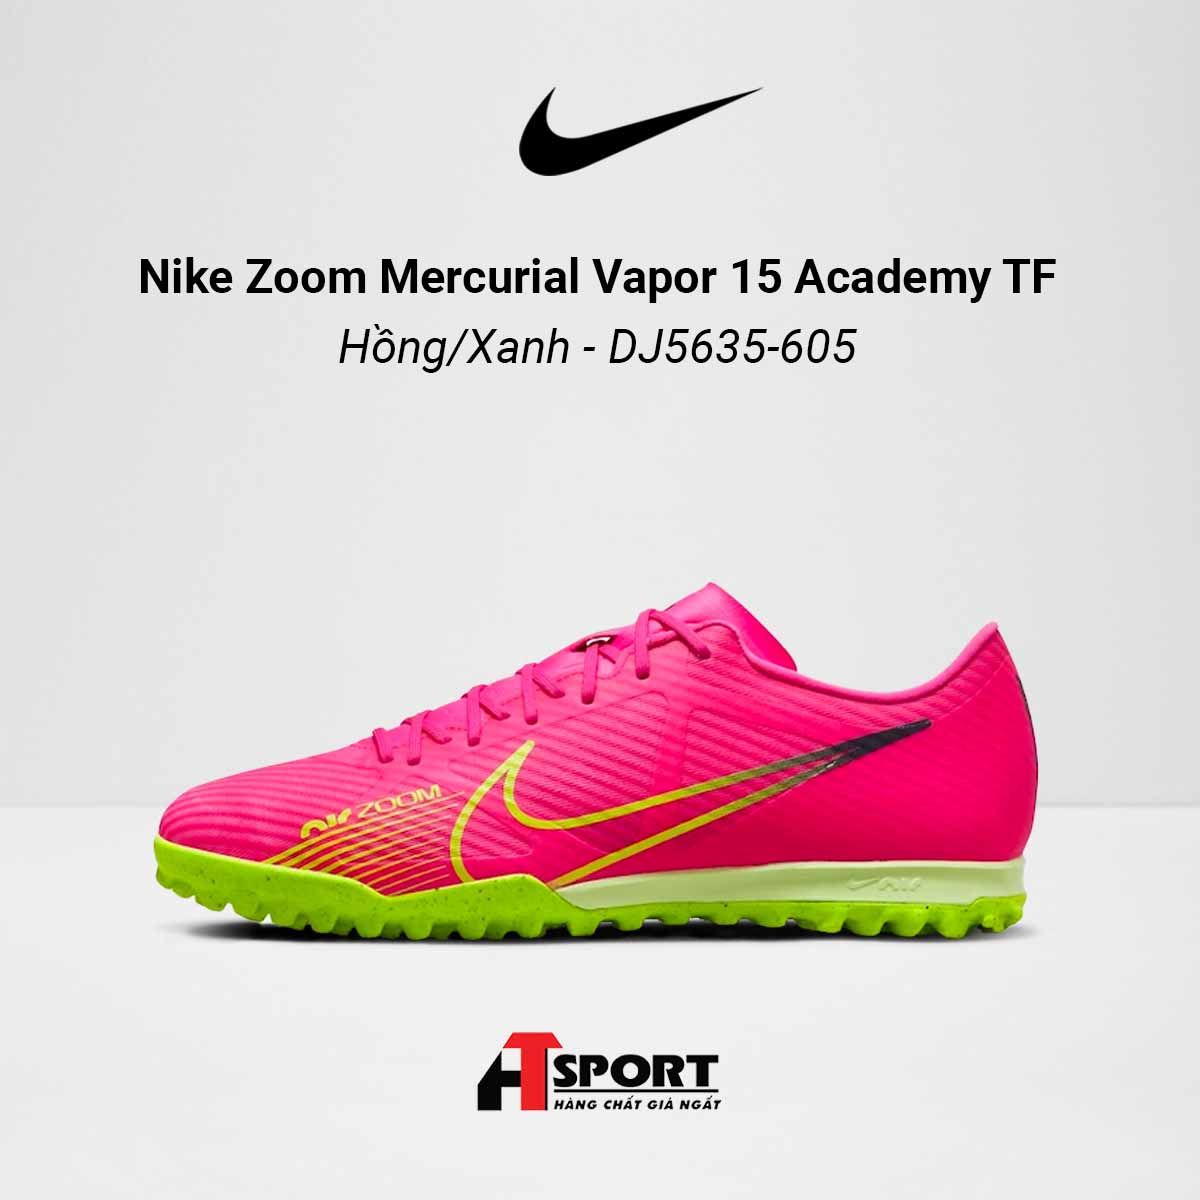  Nike Zoom Mercurial Vapor 15 Hồng/Xanh Academy TF - DJ5635-605 